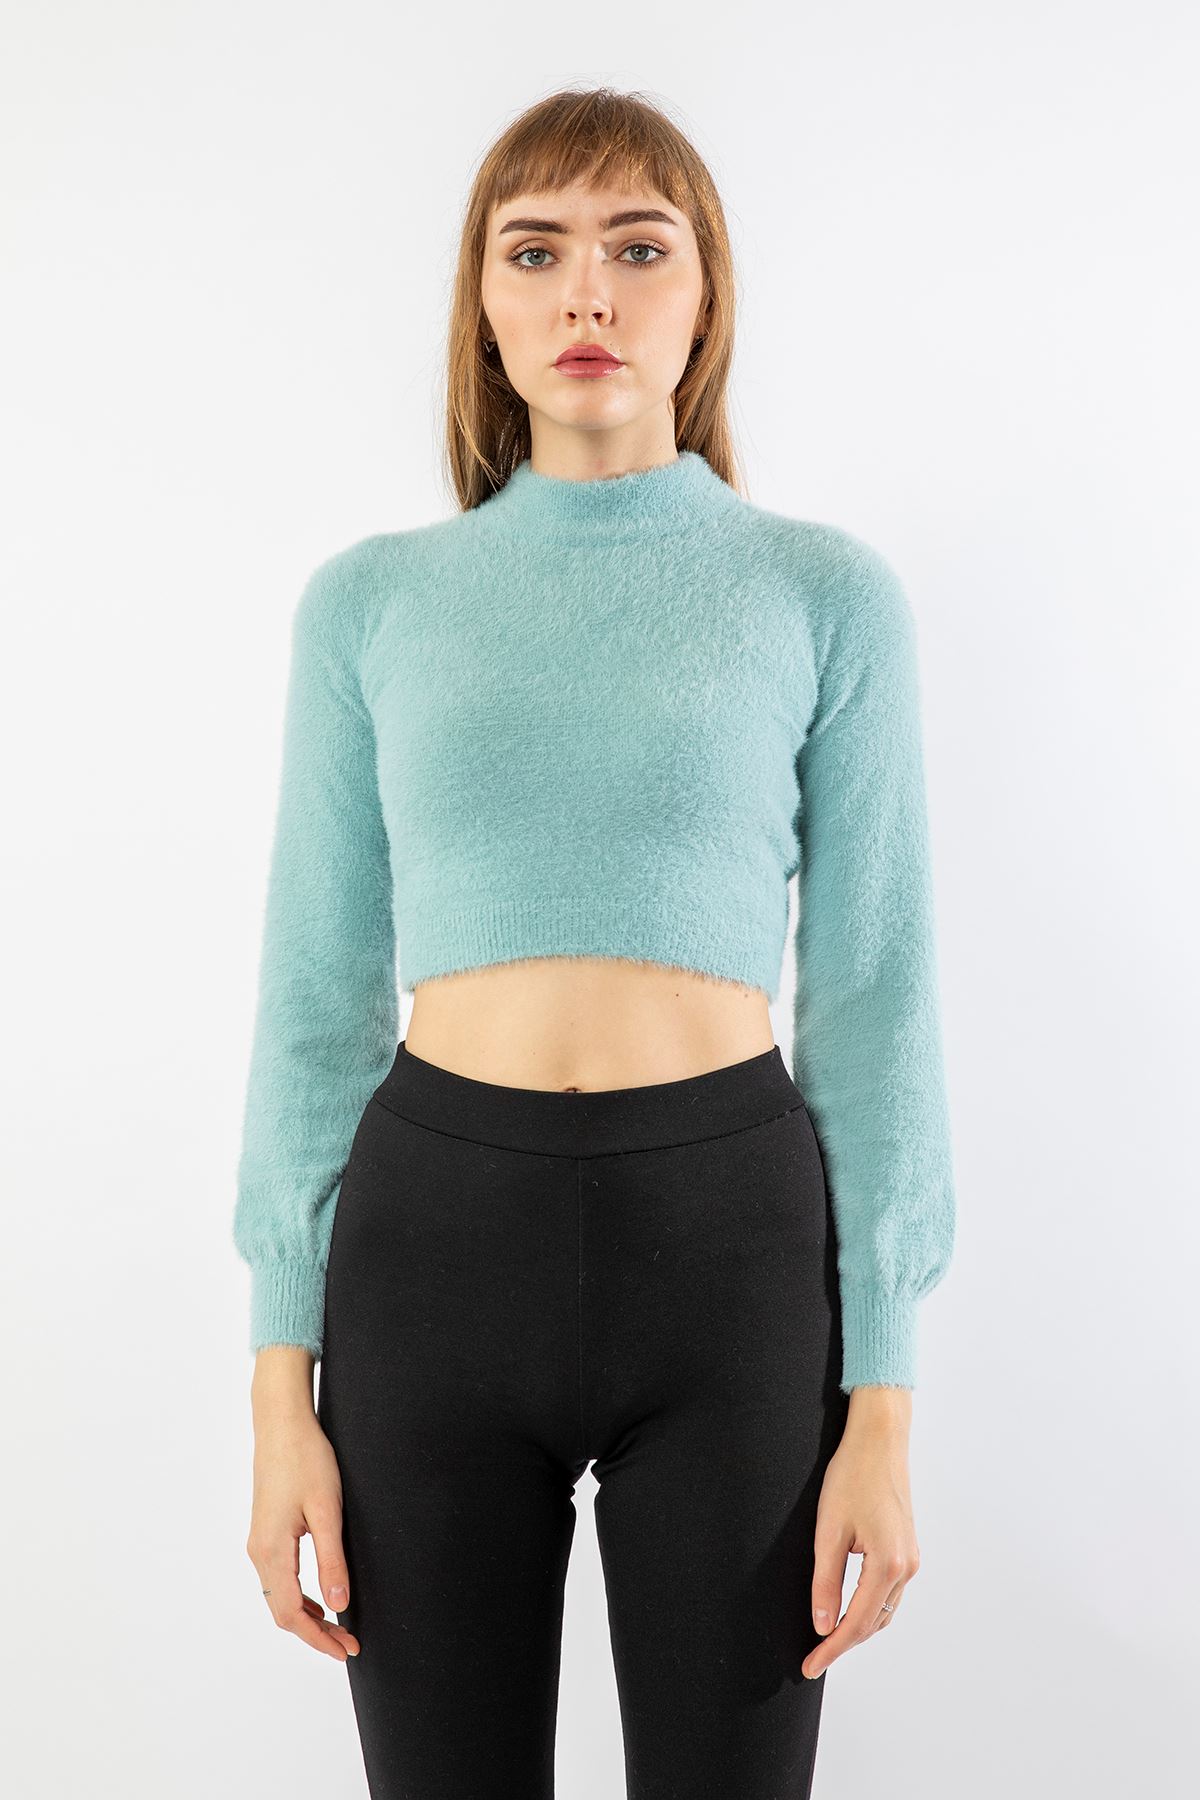 Knitwear Fabric Long Sleeve High Neck Women Sweater - Light Blue